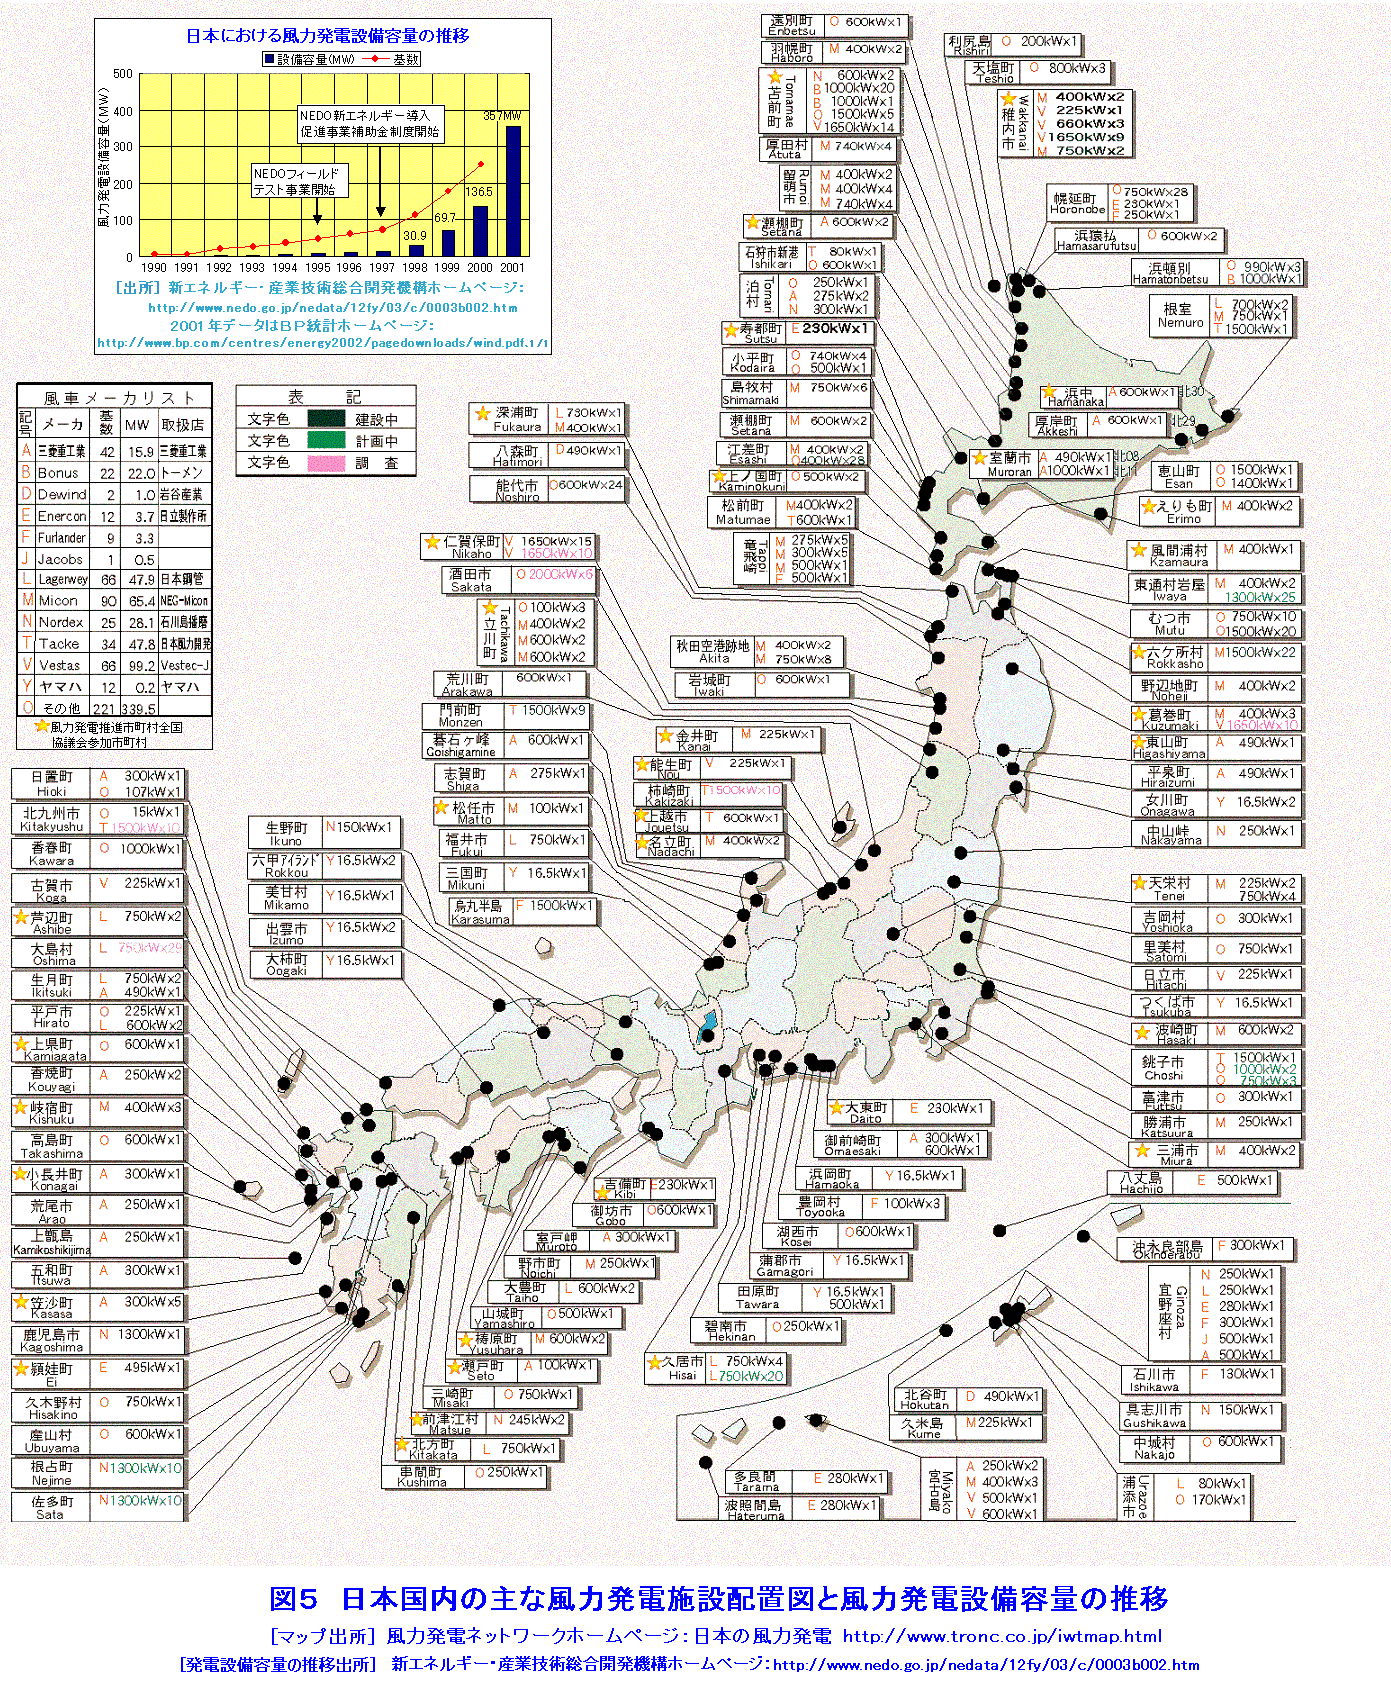 日本国内の主な風力発電施設配置図と風力発電設備容量の推移